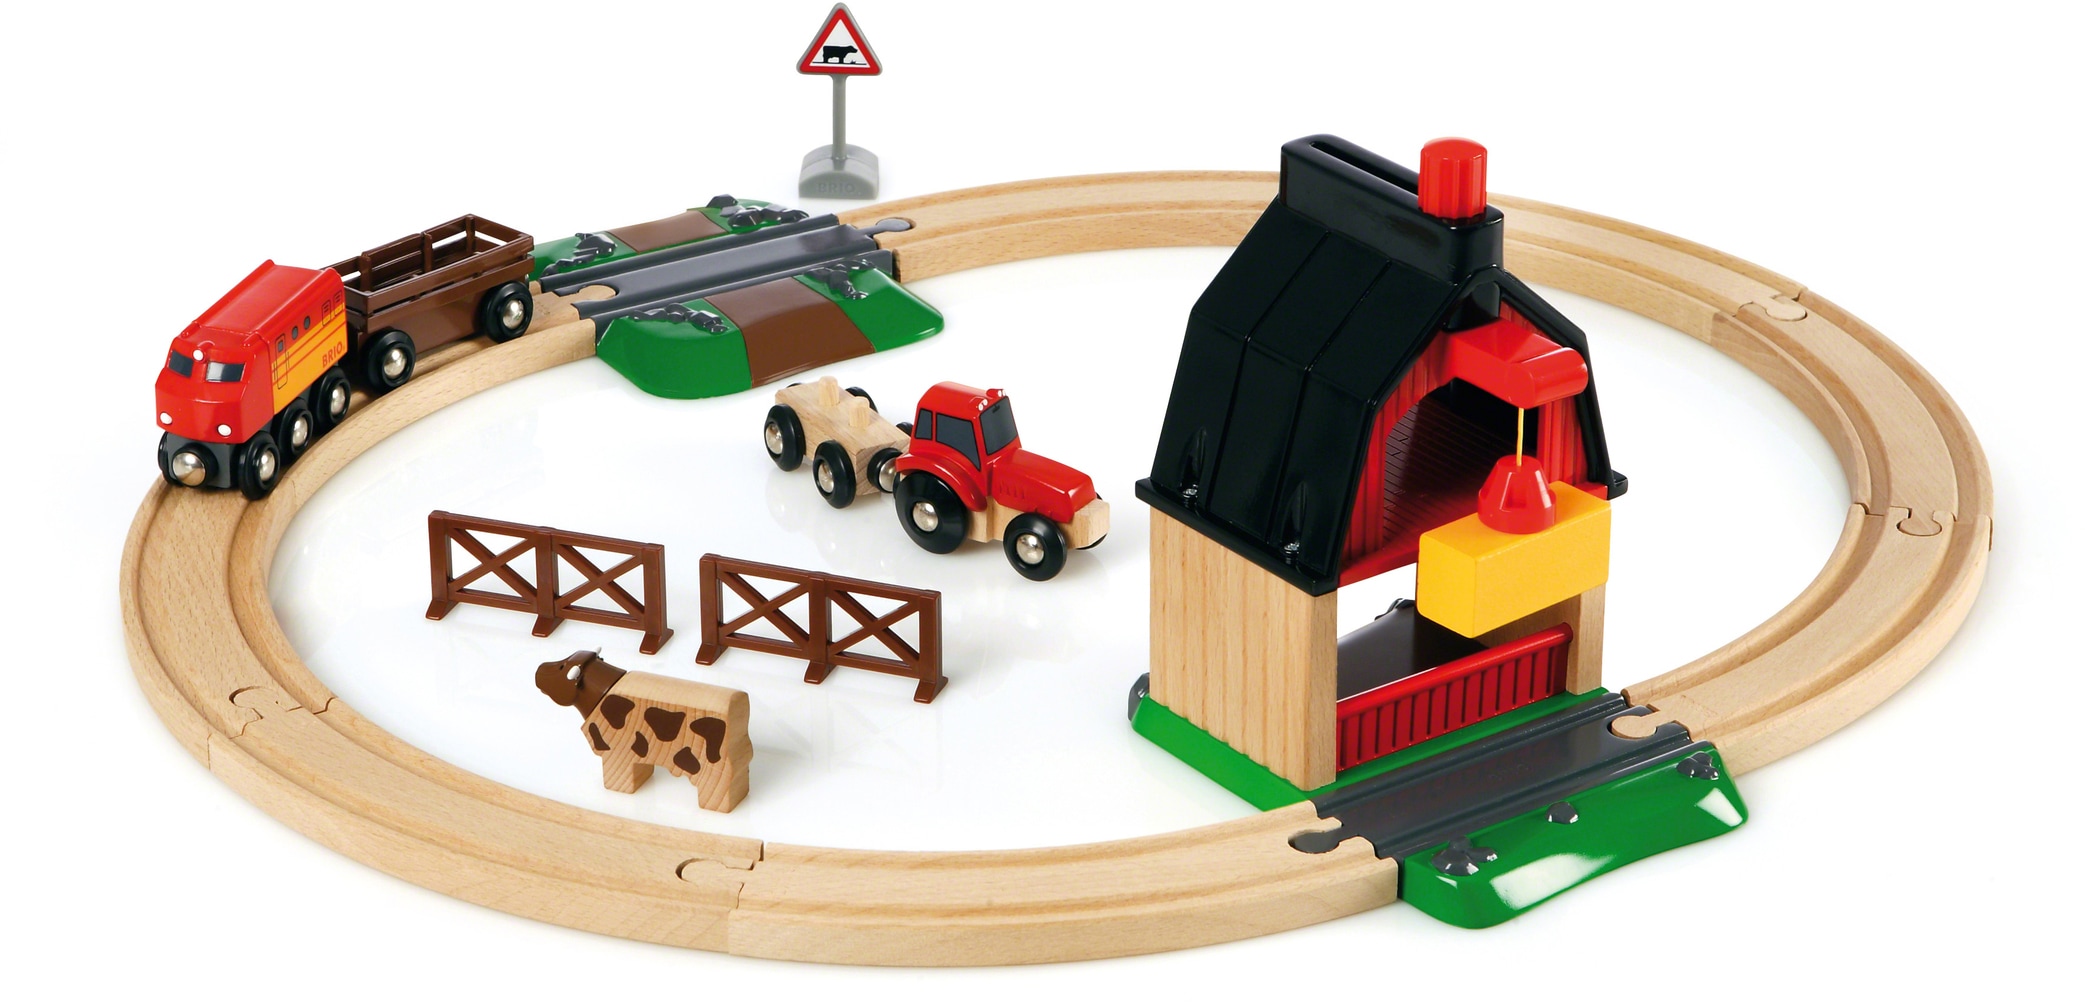 BRIO® Spielzeug-Eisenbahn »BRIO® WORLD, Bauernhof Set«, (Set), Made in Europe, FSC®- schützt Wald - weltweit